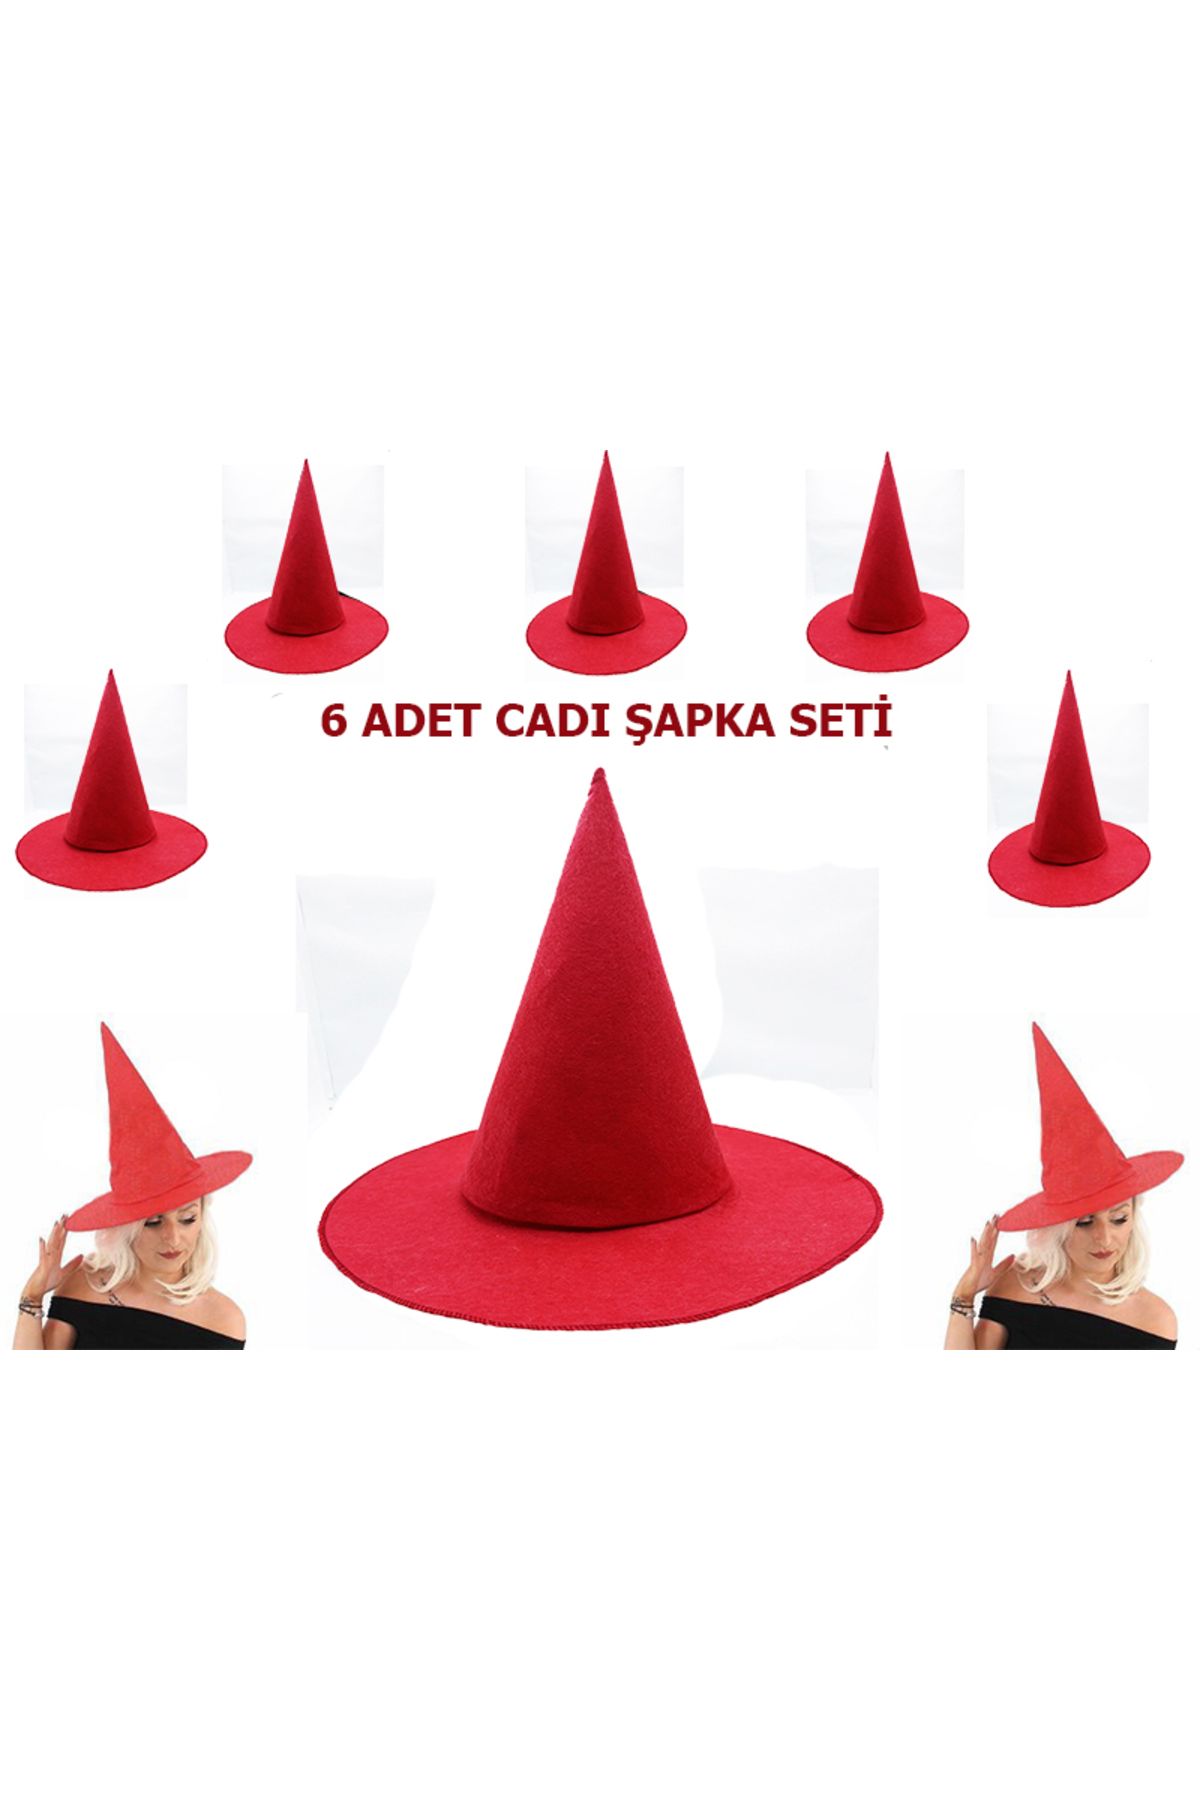 KAYAMU Kırmızı Renk Keçe Cadı Şapkası Yetişkin Çocuk Uyumlu 6 Adet (K0)